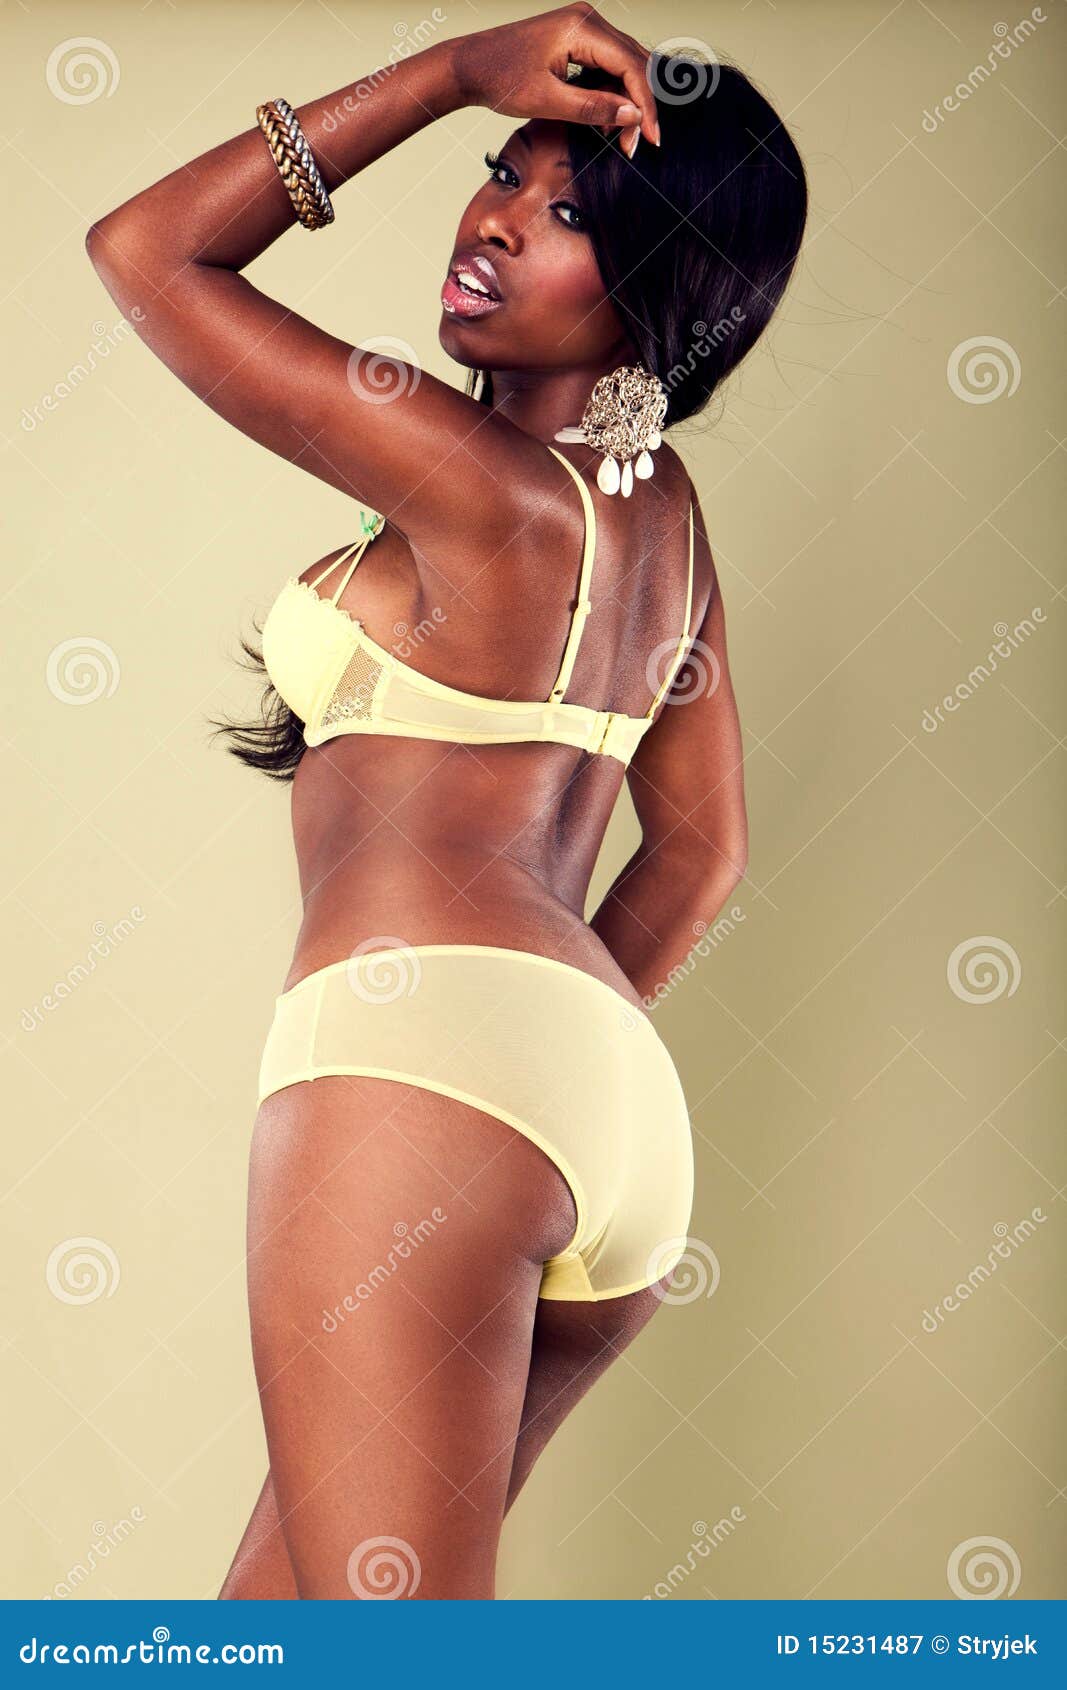 constantina petrou share young ebony panties photos